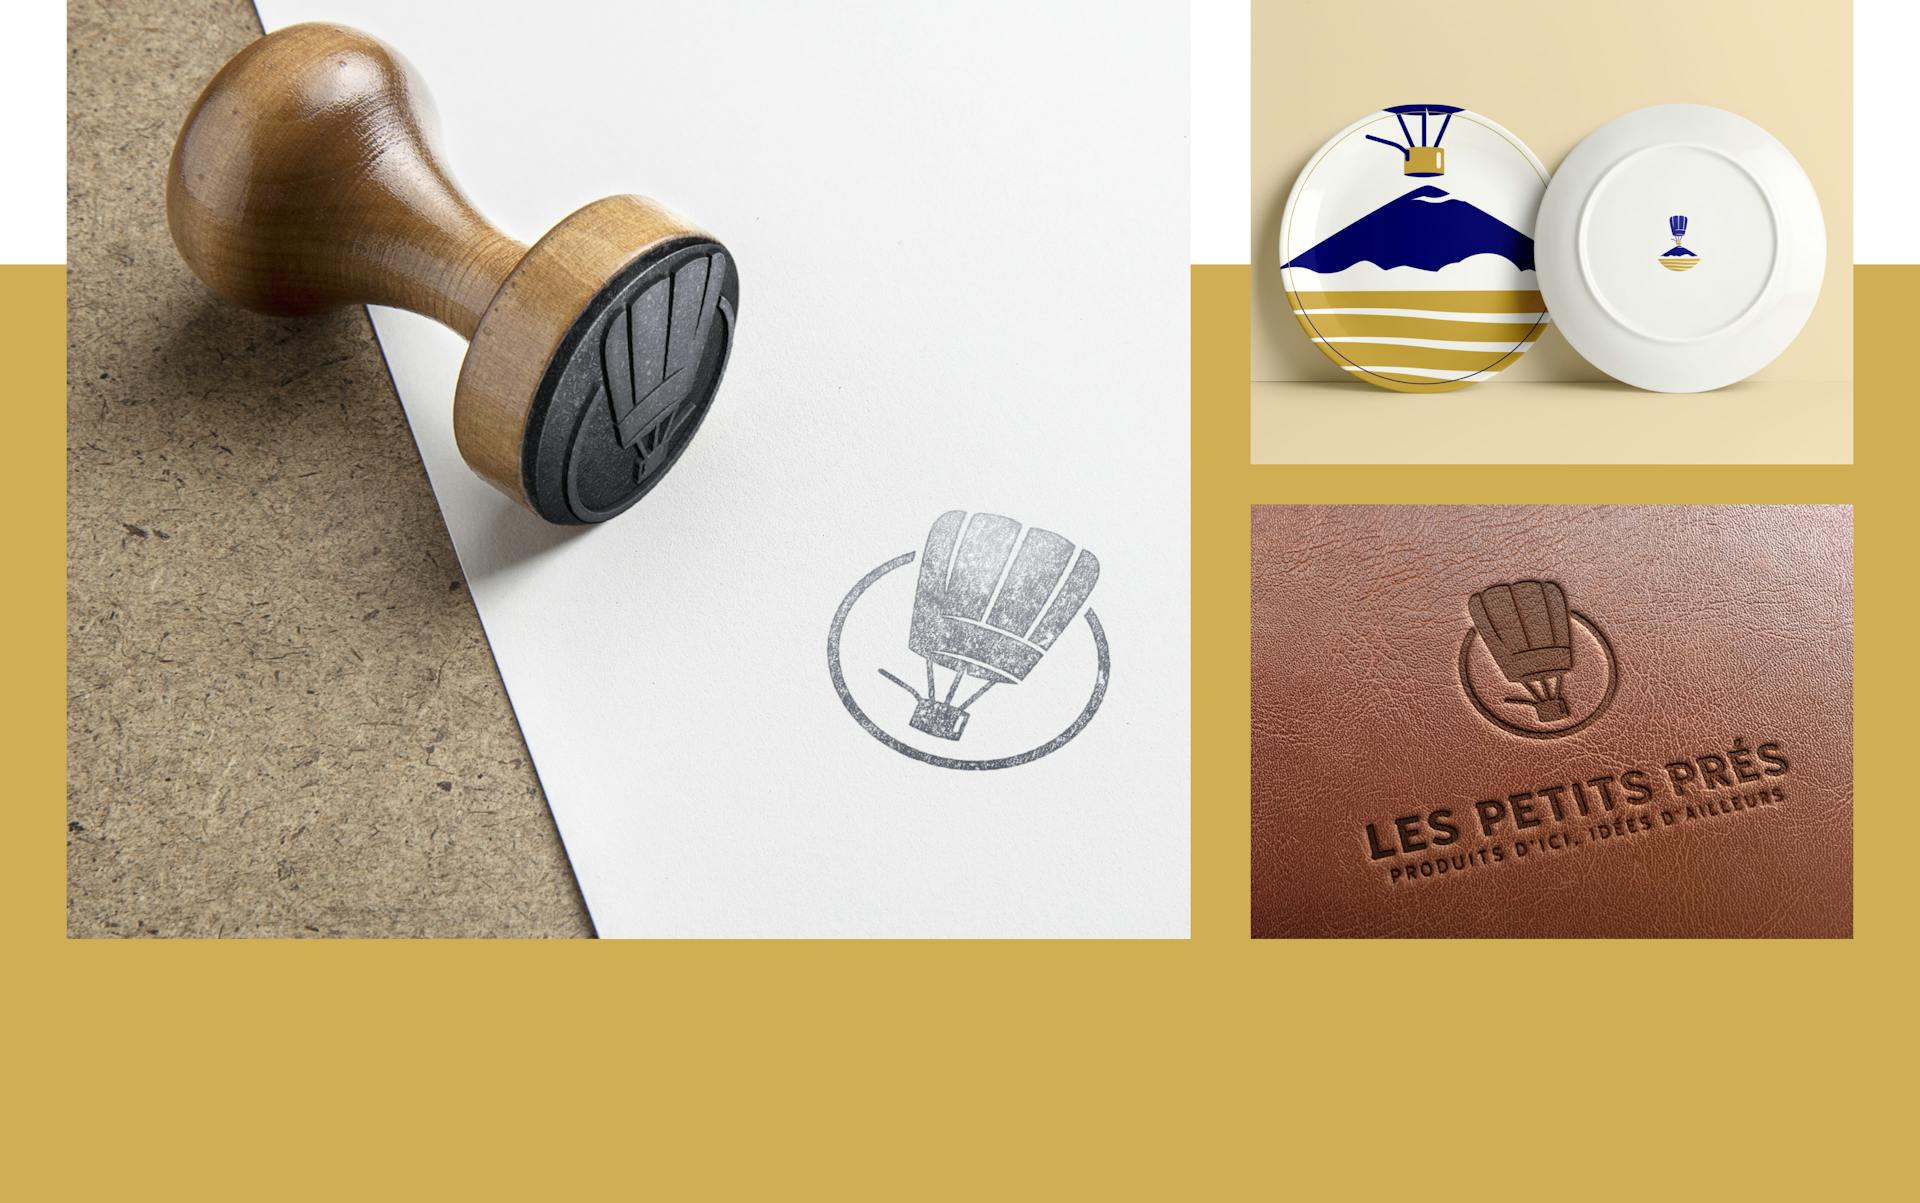 Mockup conceptuels d'un tampon, d'une assiette et d'une impression sur cuir du nouveau logo du restaurant "Les Petits Prés".